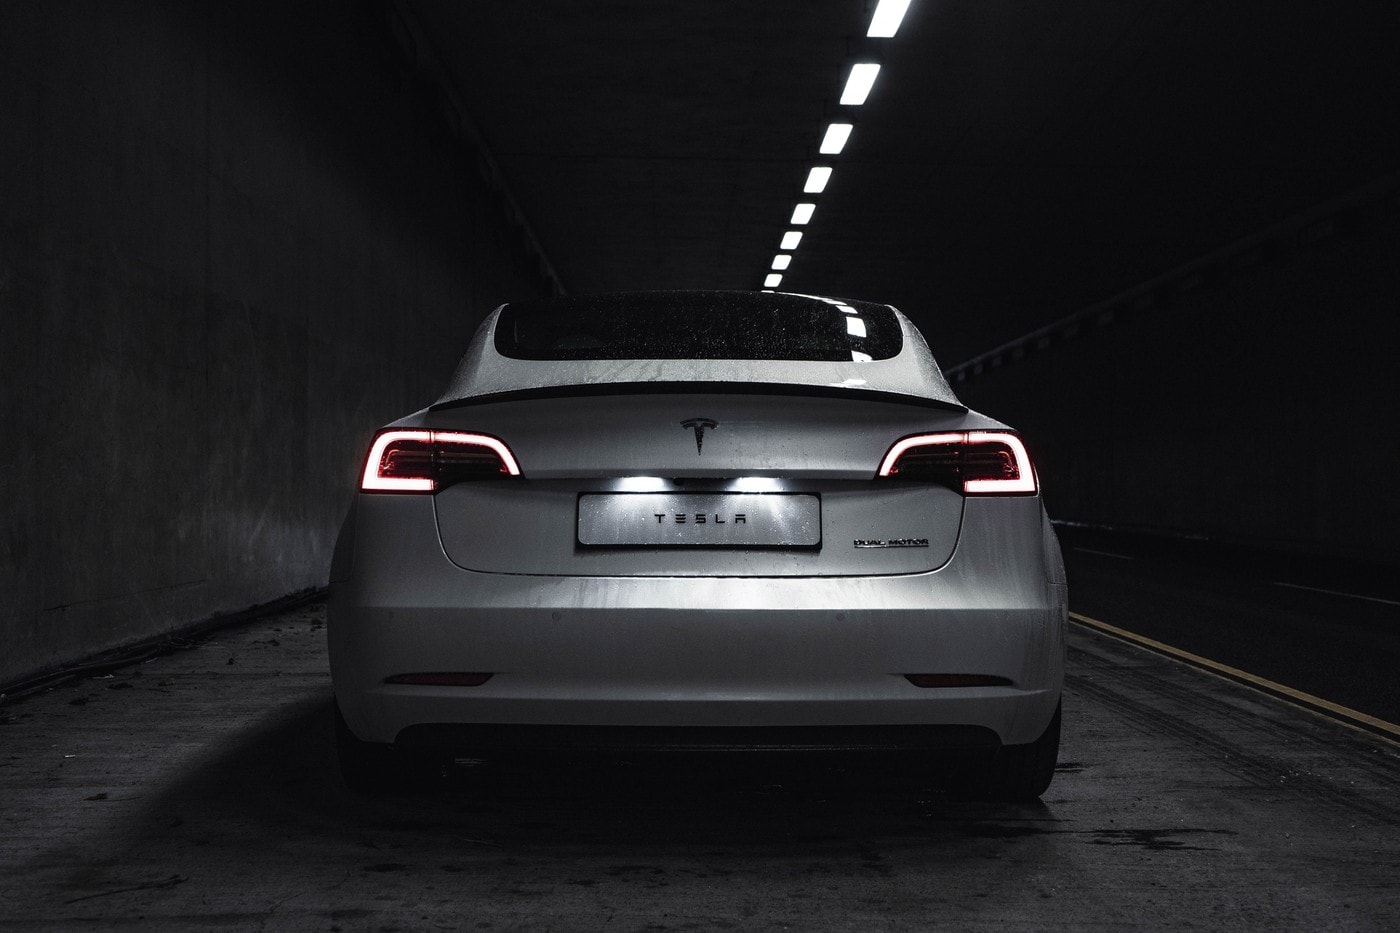 Tesla 宣佈未來將推出 $25,000 美元全新電能車型